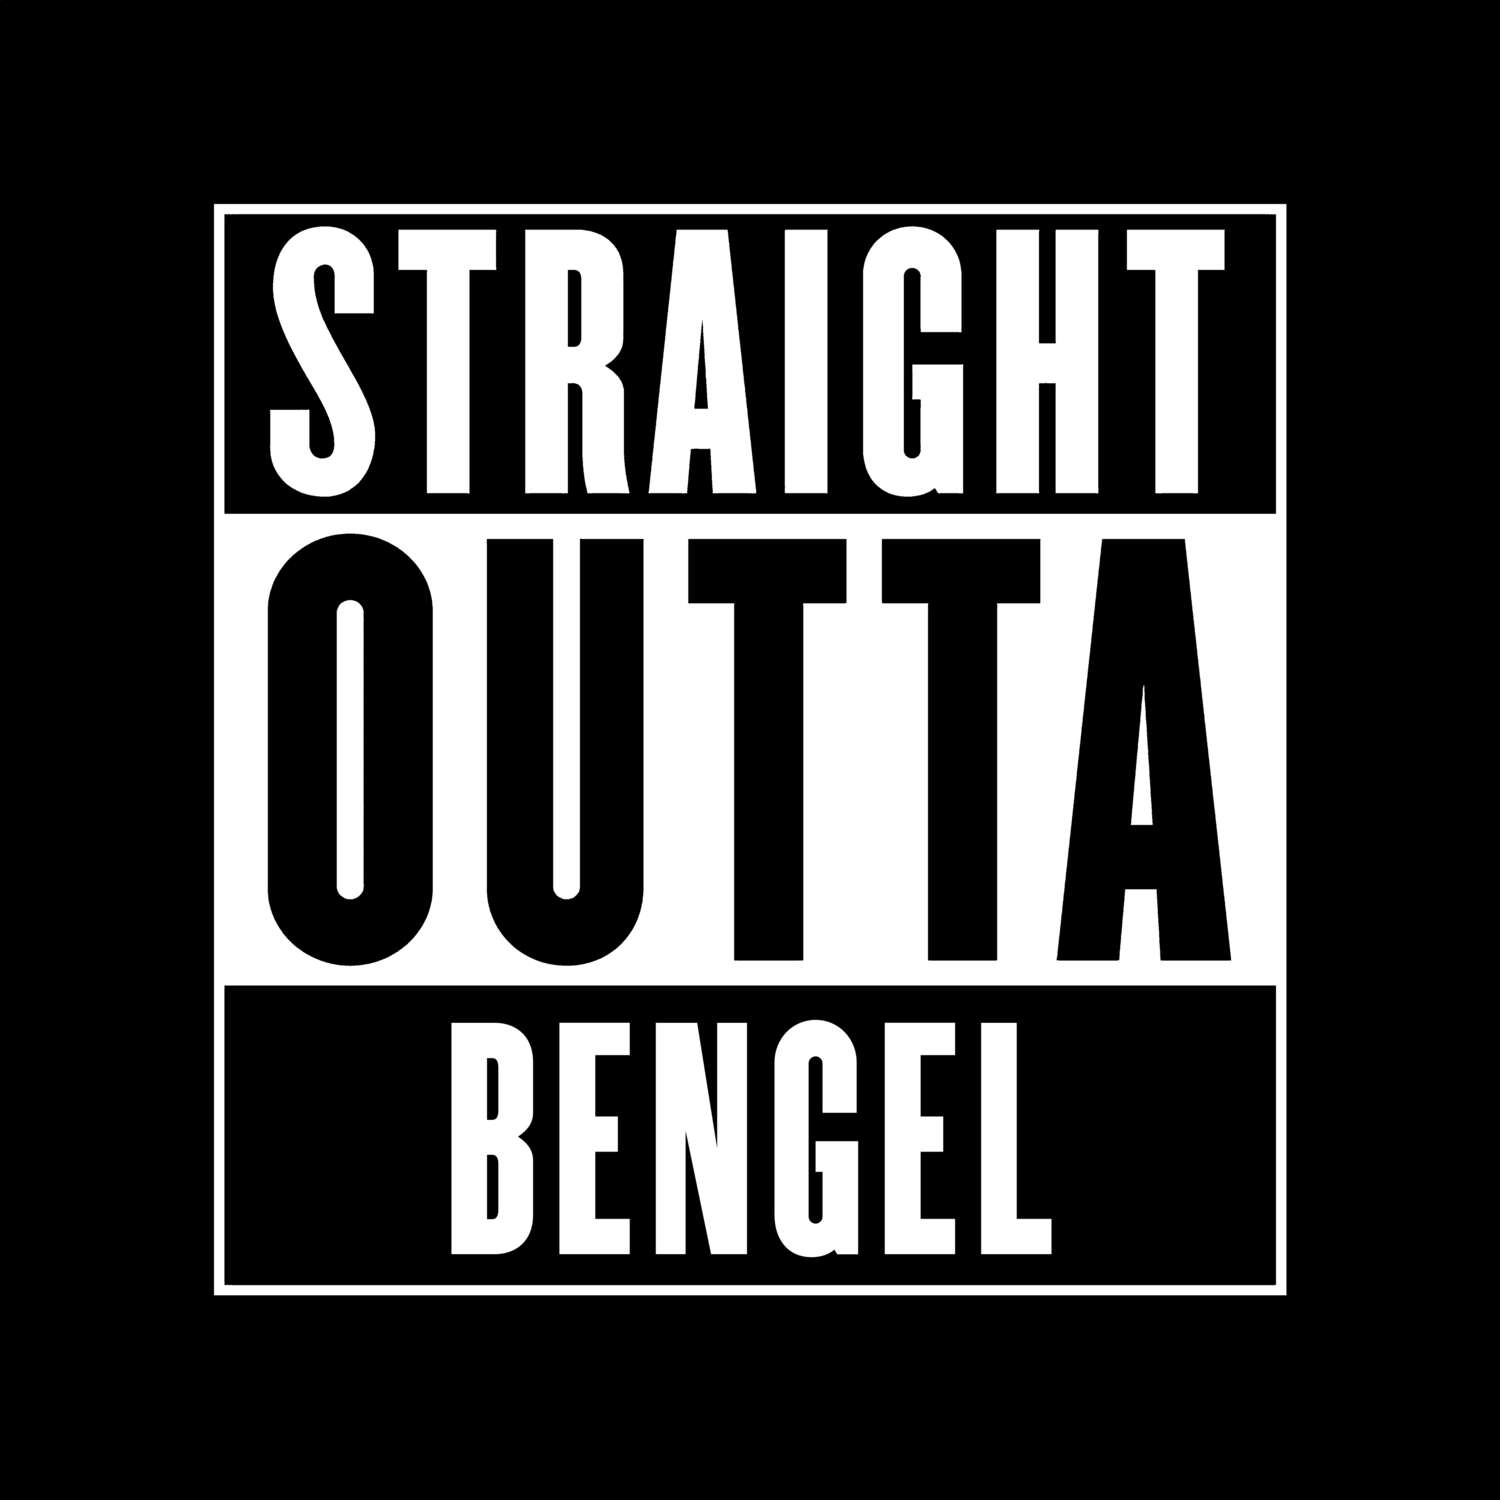 Bengel T-Shirt »Straight Outta«